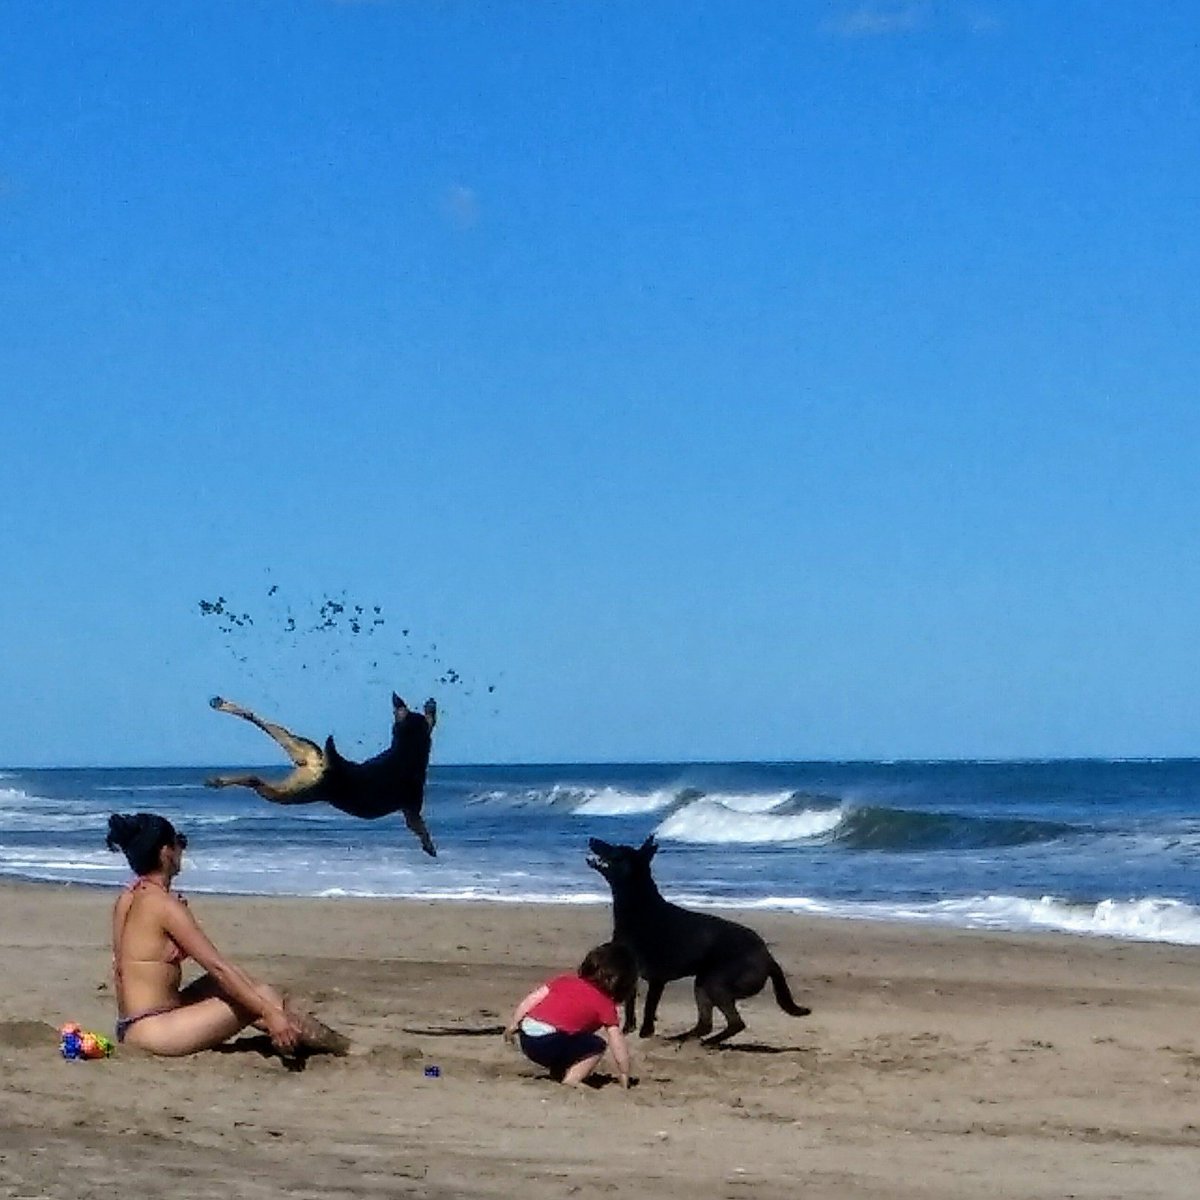 El perro volador. #MarDelPlata #PlayasDelSur